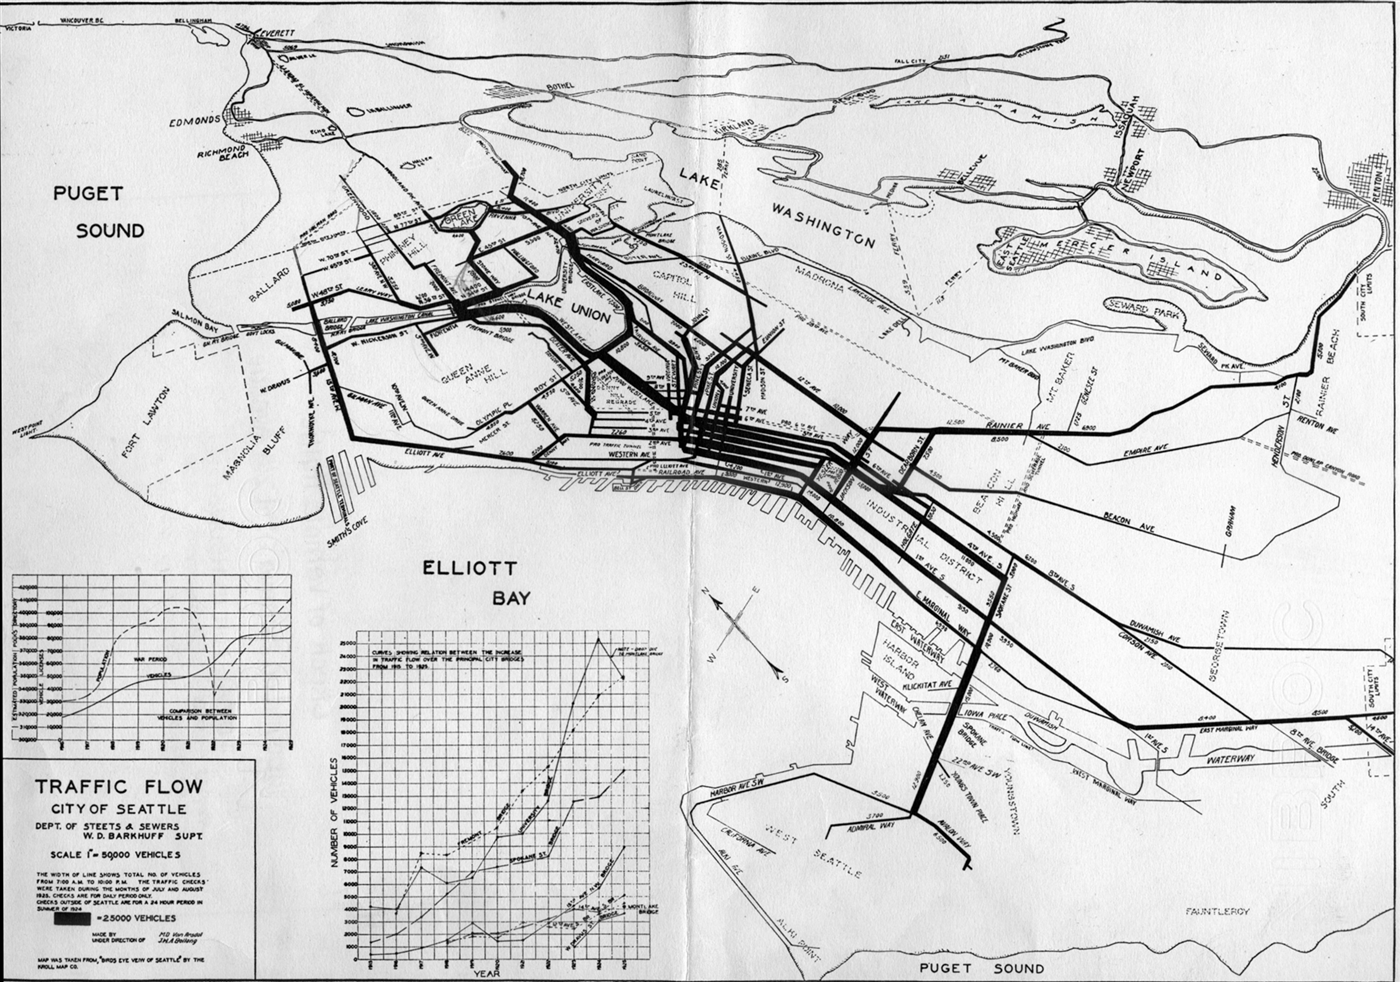 1924 traffic flow map